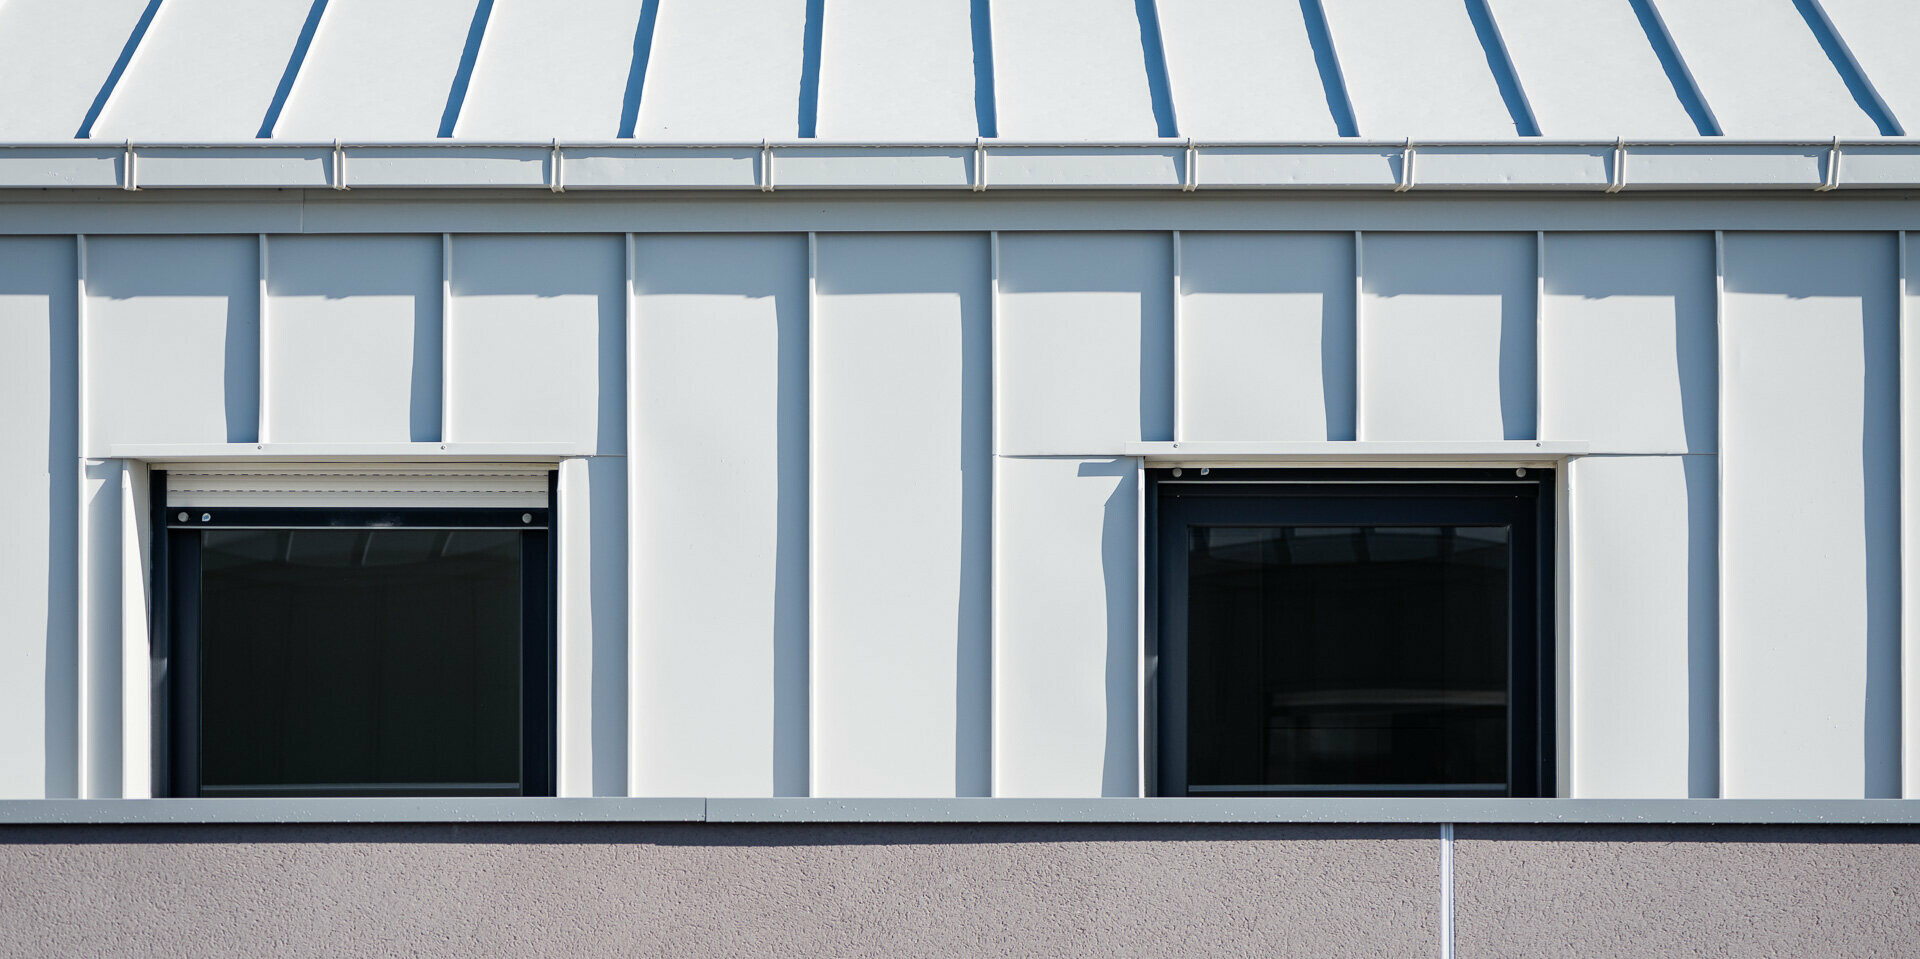 PREFALZ vo farbe P.10 čistá biela a P.10 svetlošedá na streche a častiach fasády obytného komplexu Vila Nava vo Villenave-d'Ornon